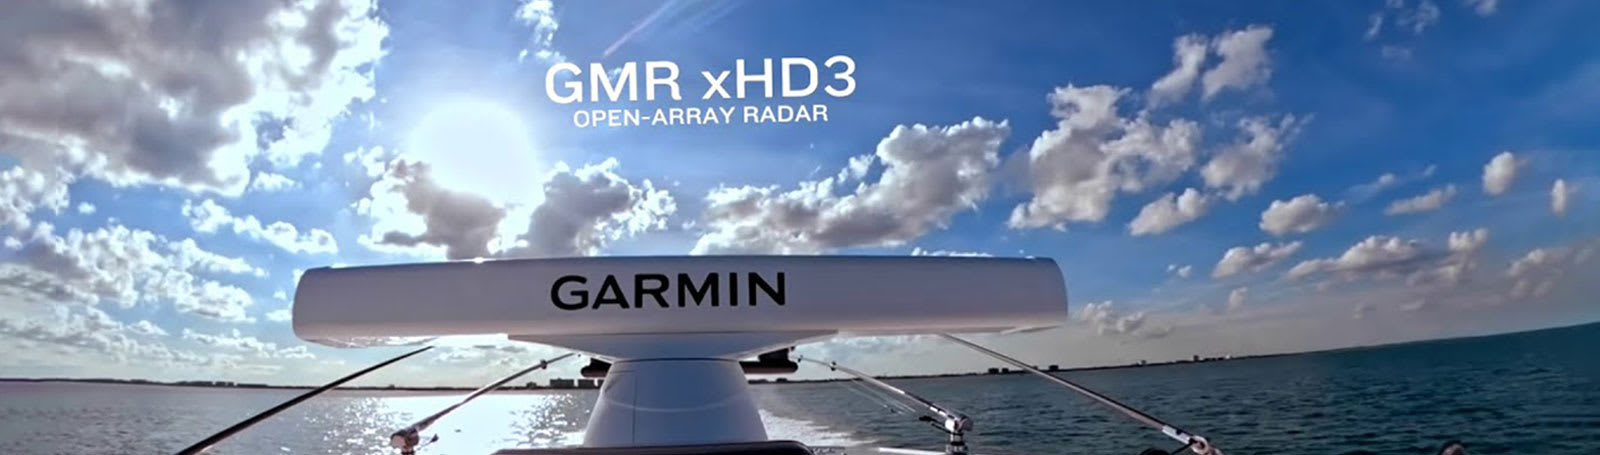 Garmin Radar GMR 436 xHD3 Åpen msokkel 6ft 194cm 4kW 72nm 2448 RPM K100001225